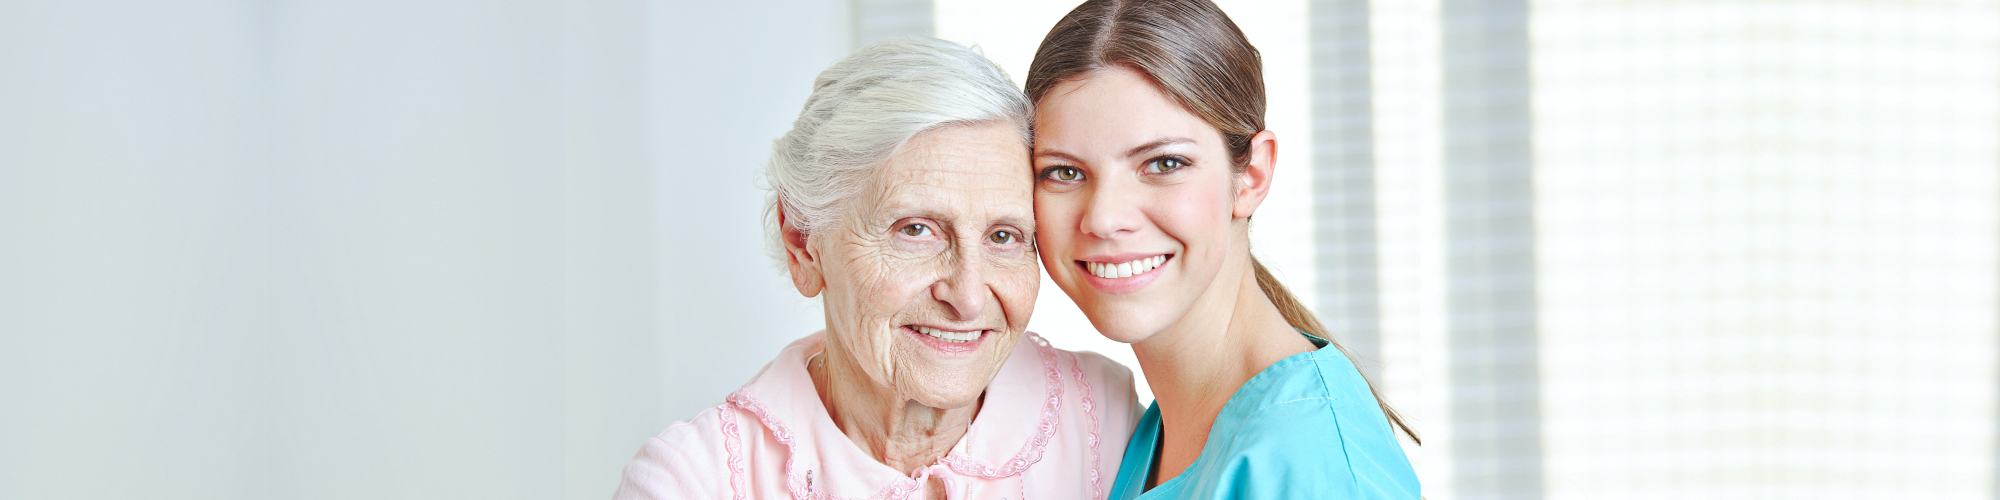 caregiver and senior smiling